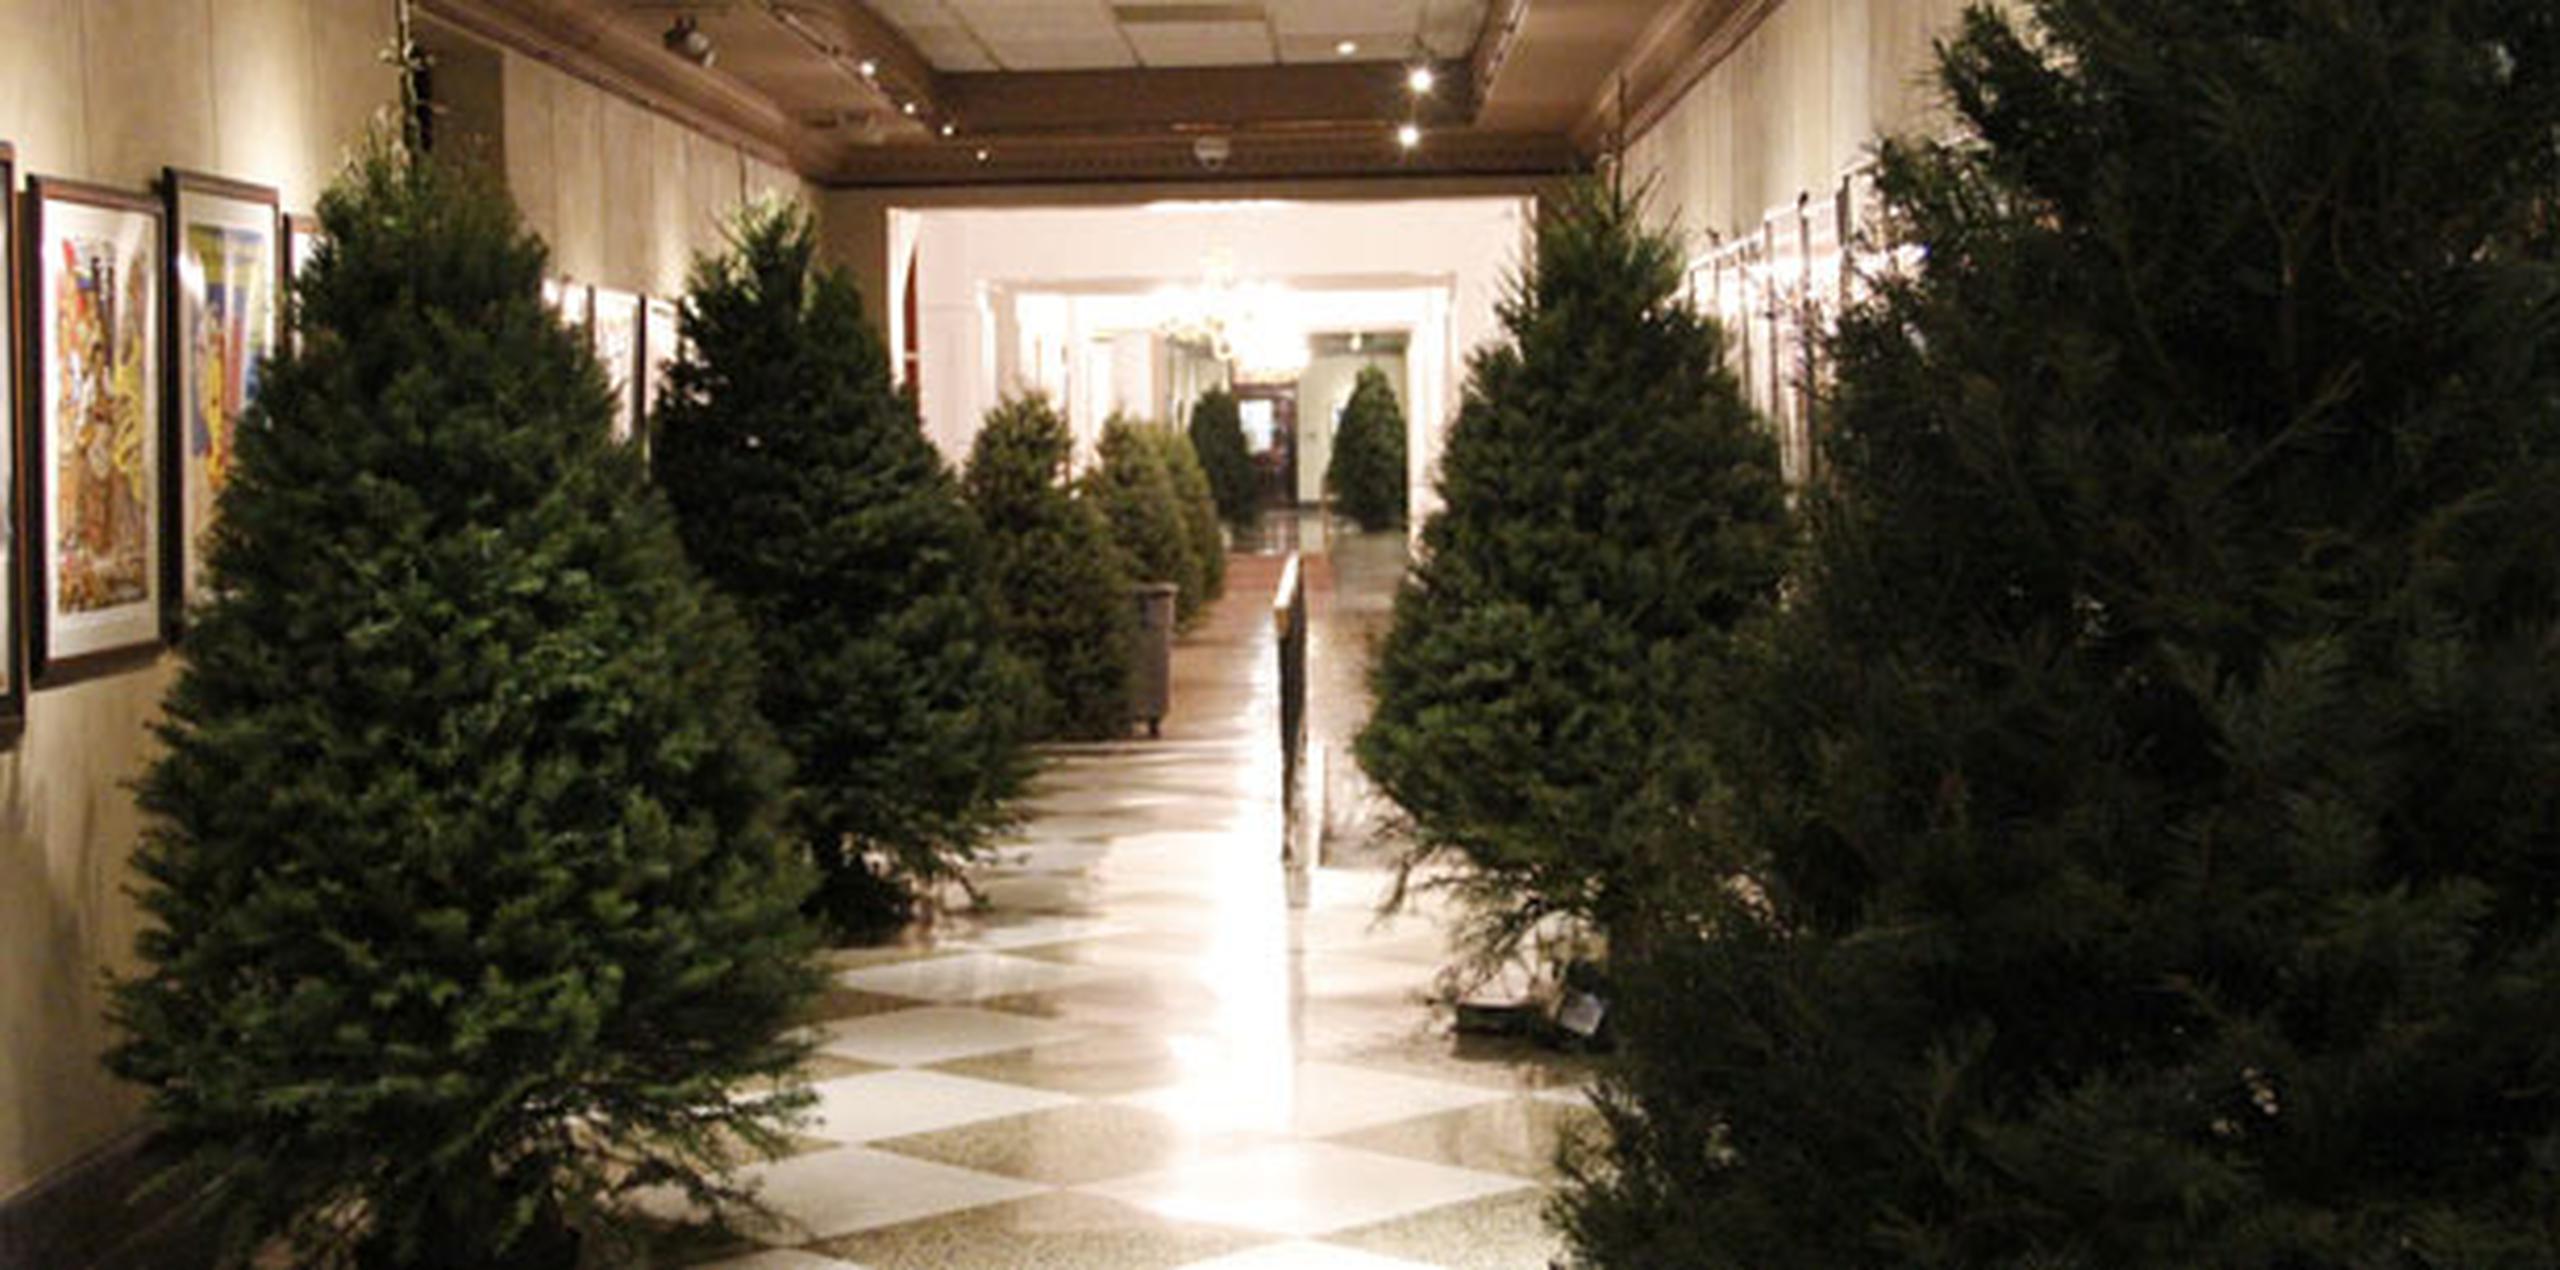 Estos pinos forman parte de la decoración navideña en el Capitolio. (michelle.estrada@gfrmedia.com)